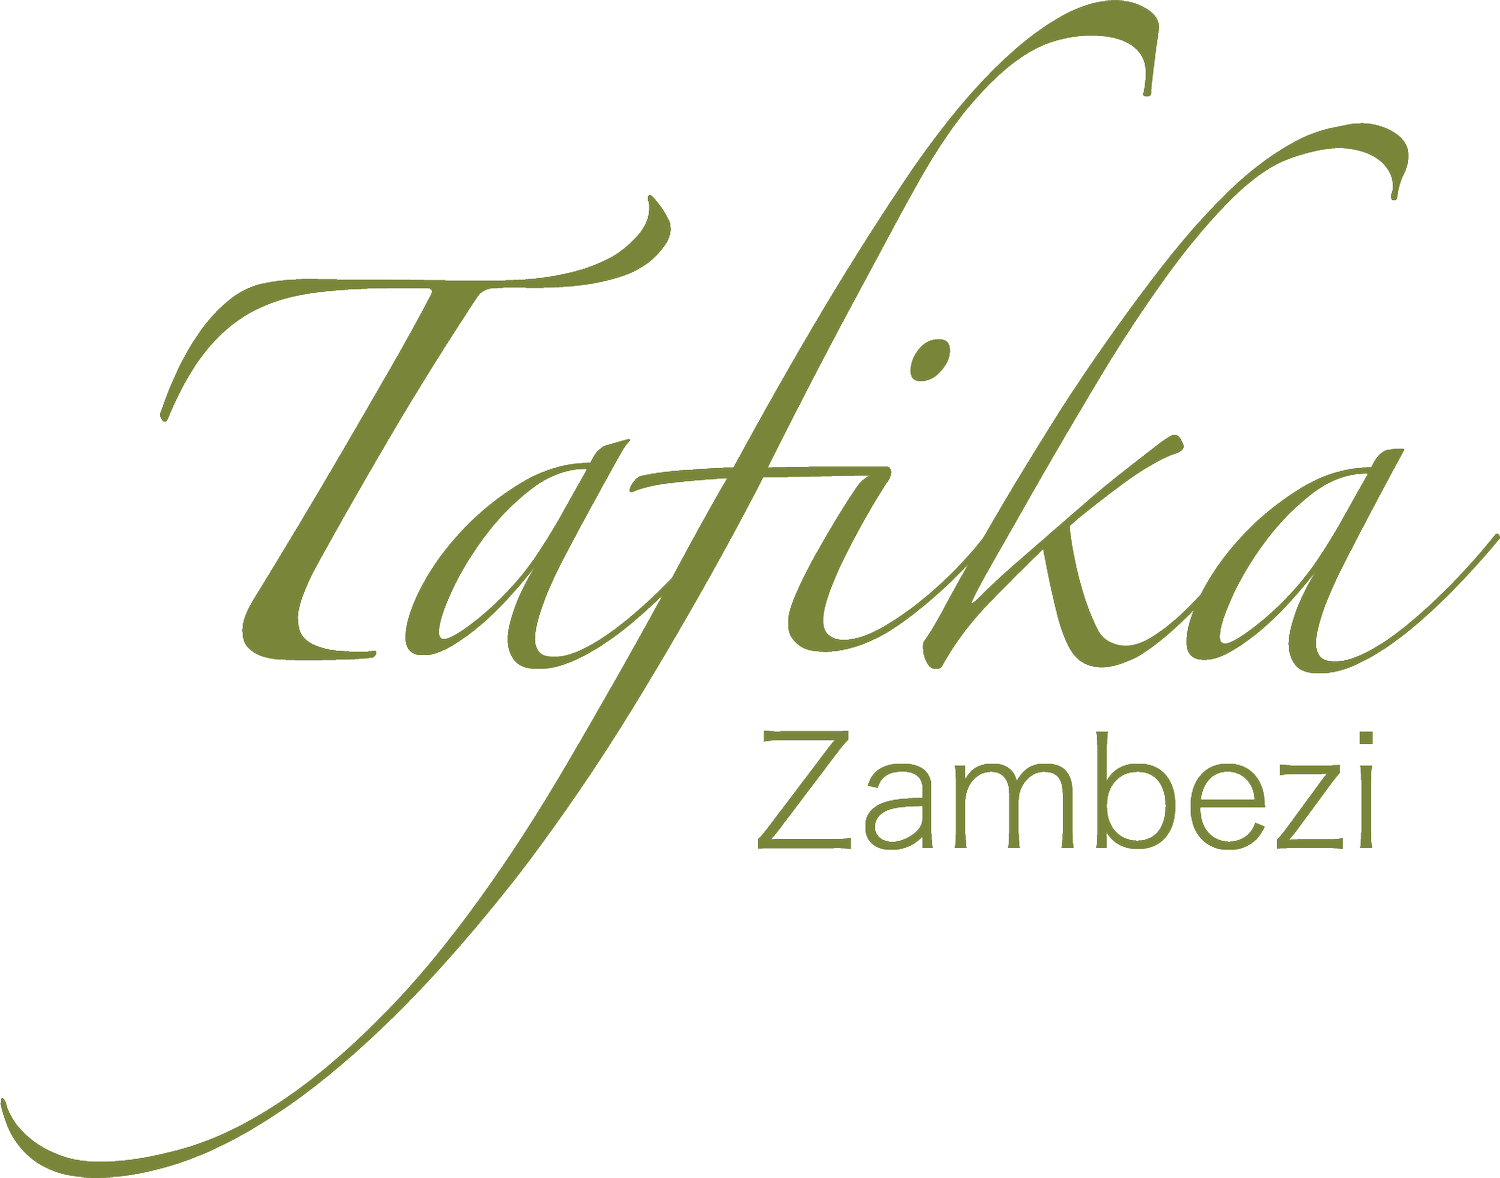 Tafika zambezi